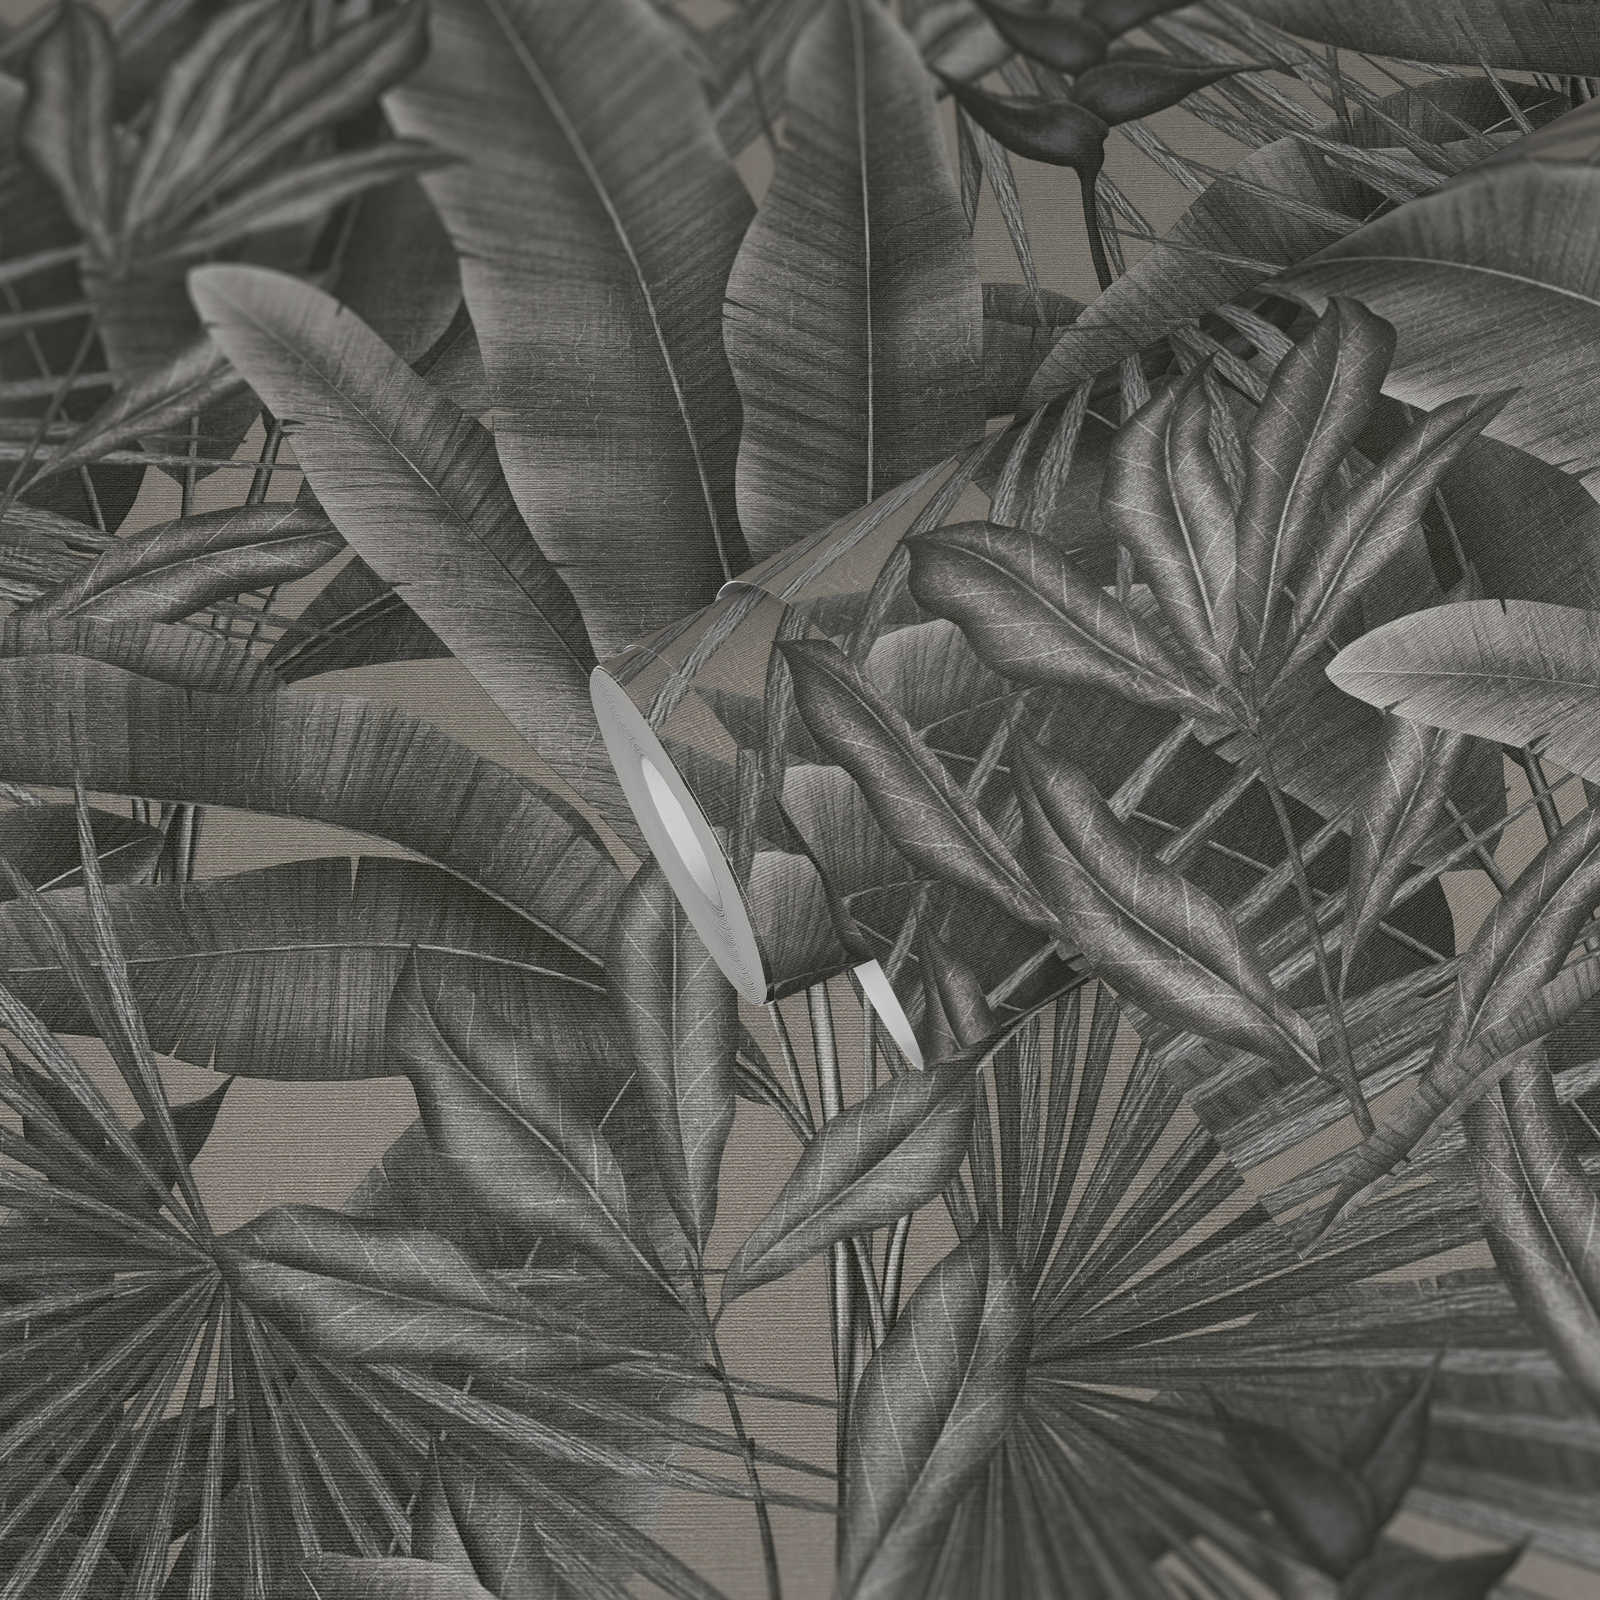             Vliesbehang met bladmotief in jungledessin - grijs, beige, zwart
        